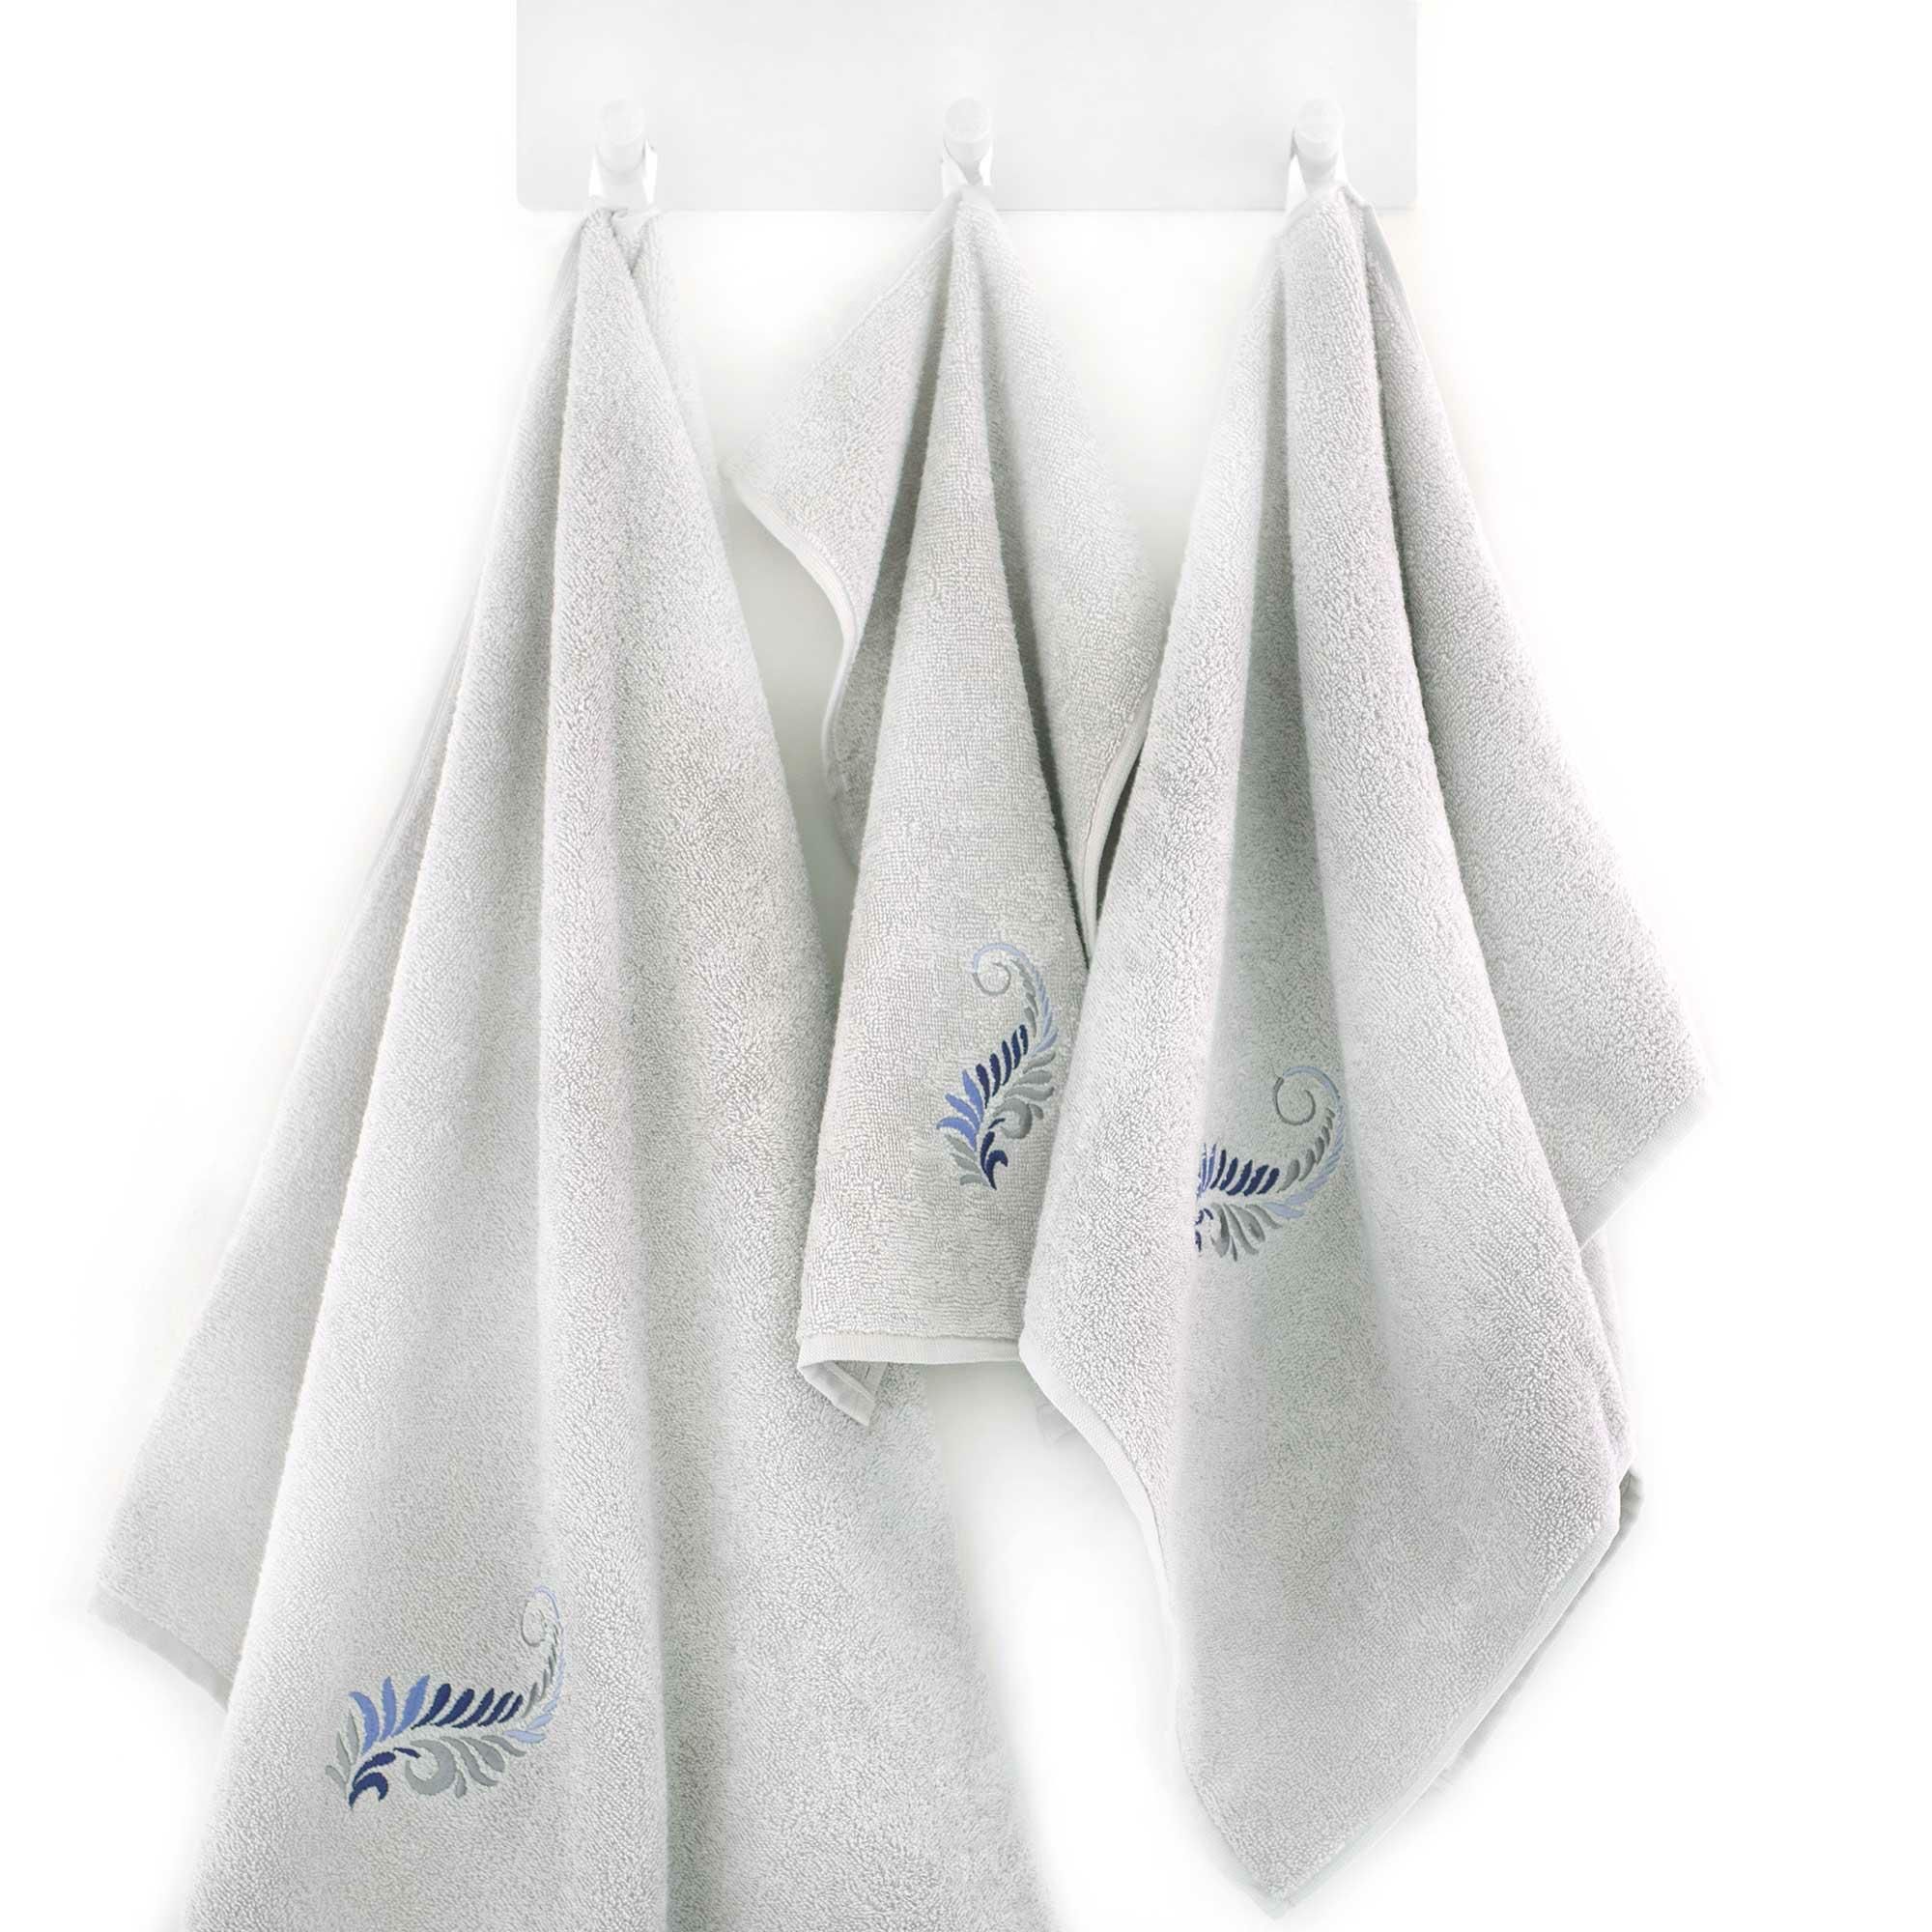 Komplet ręczników 3 szt. Pióro gips szary jasny